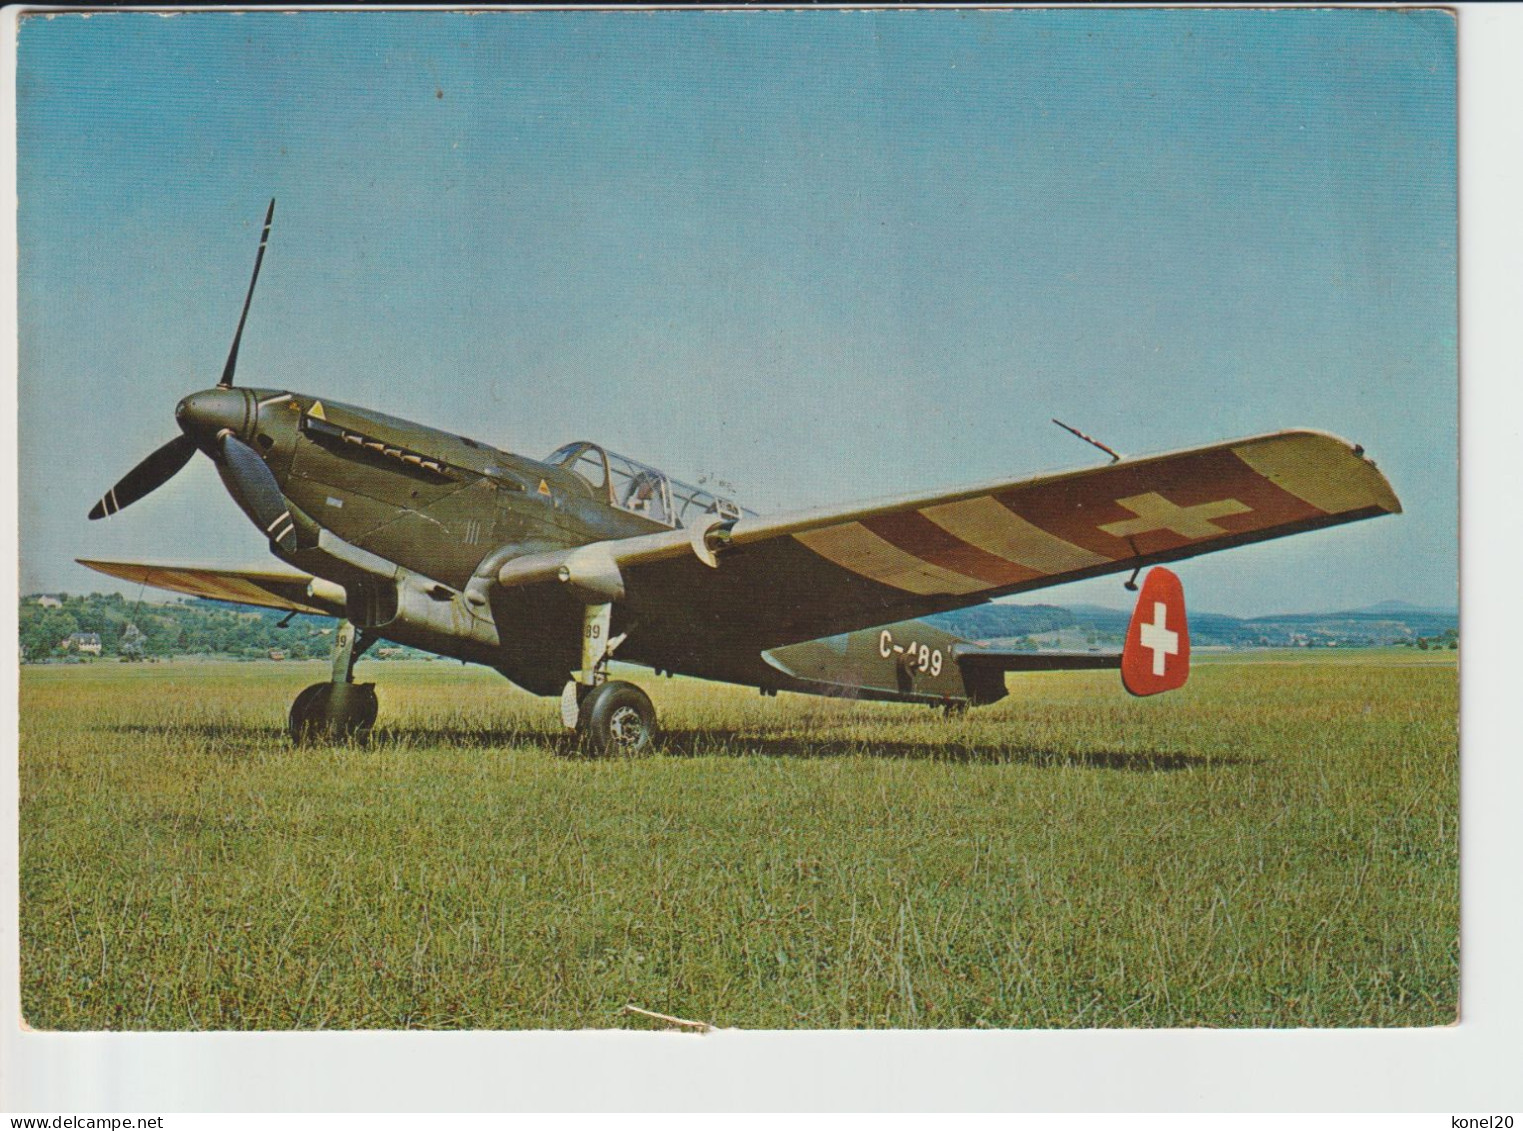 Vintage Pc Swiss C-3603 Aircraft - 1919-1938: Entre Guerras